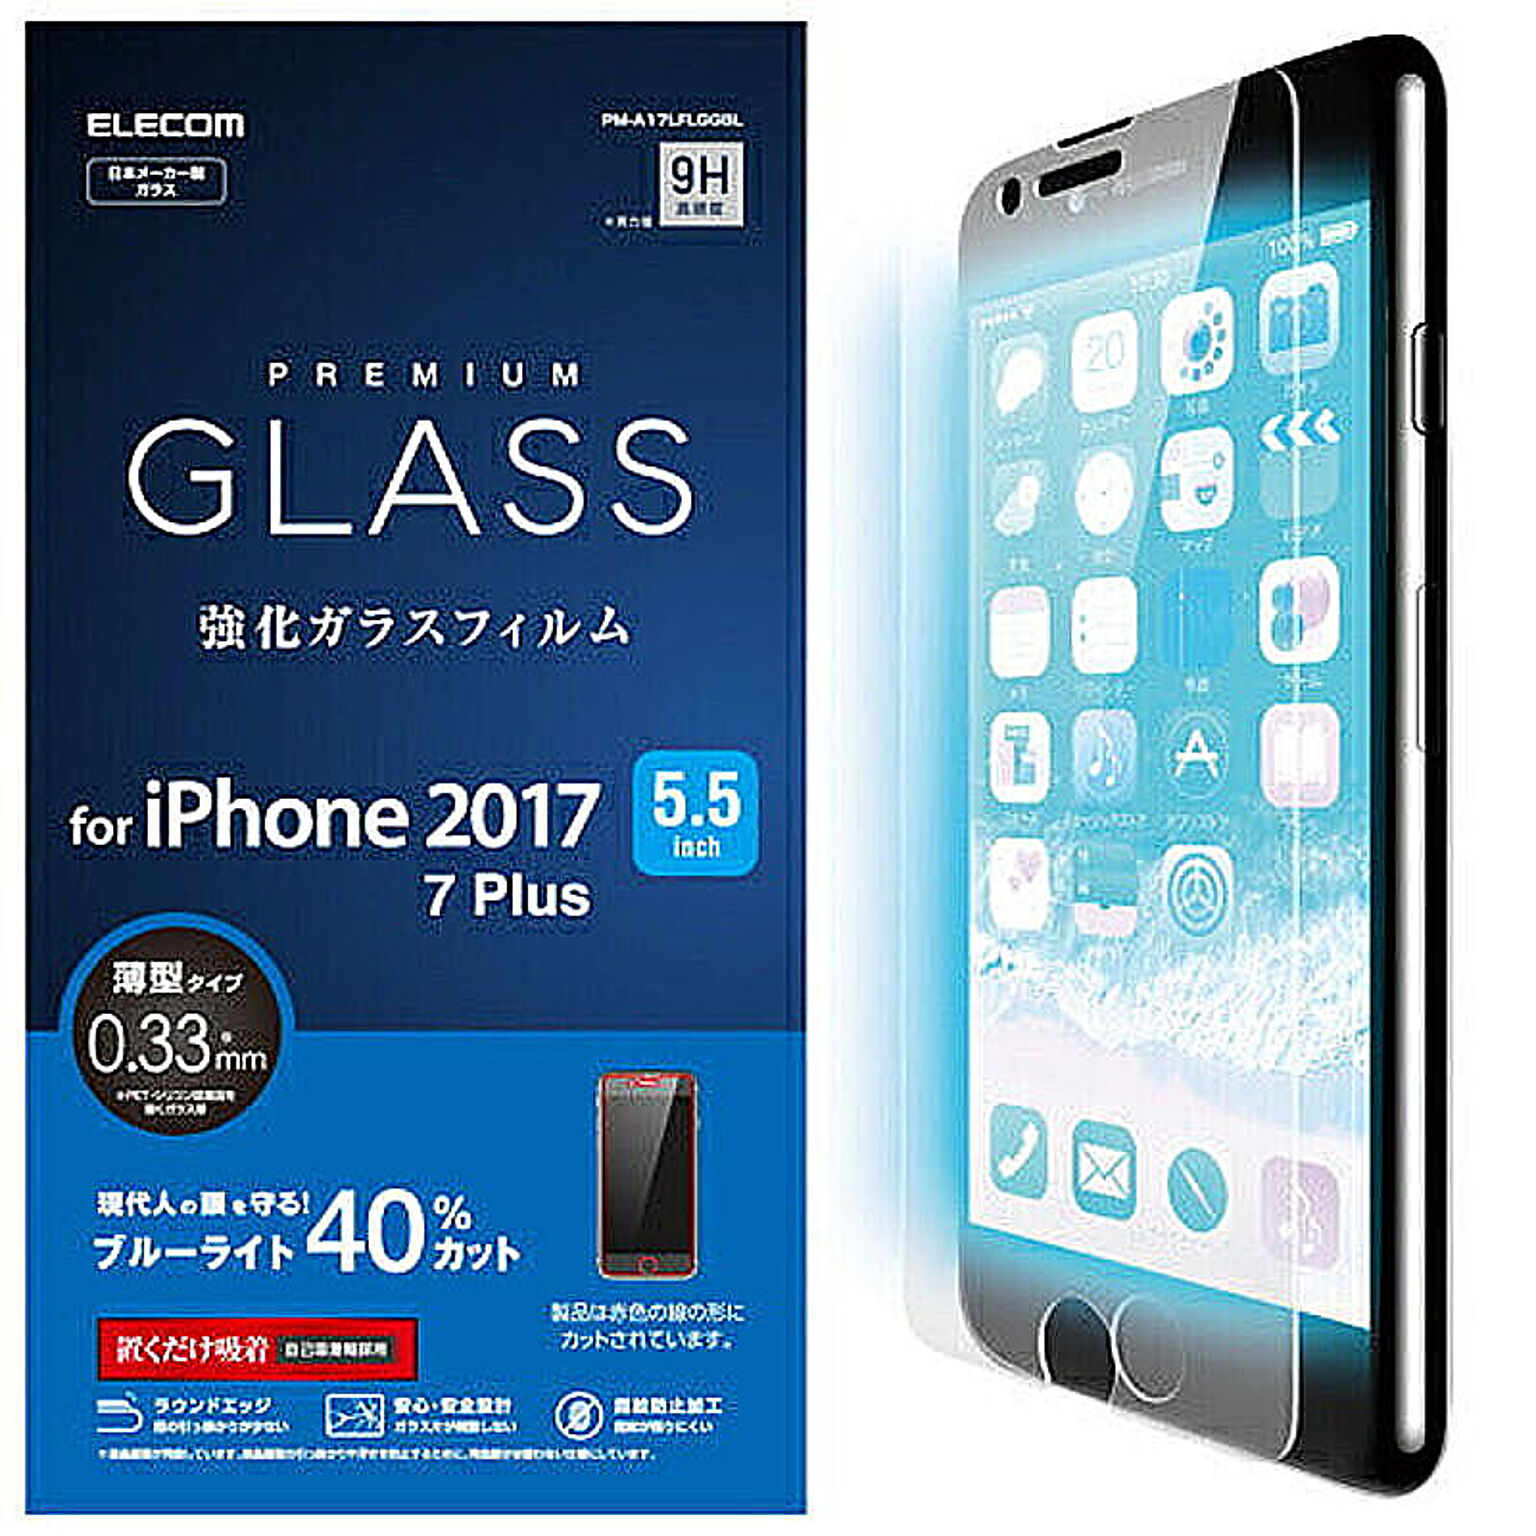 エレコム iPhone8Plus/フィルム/ガラス/ /0.33mm PM-A17LFLGGBL 管理No. 4953103335851